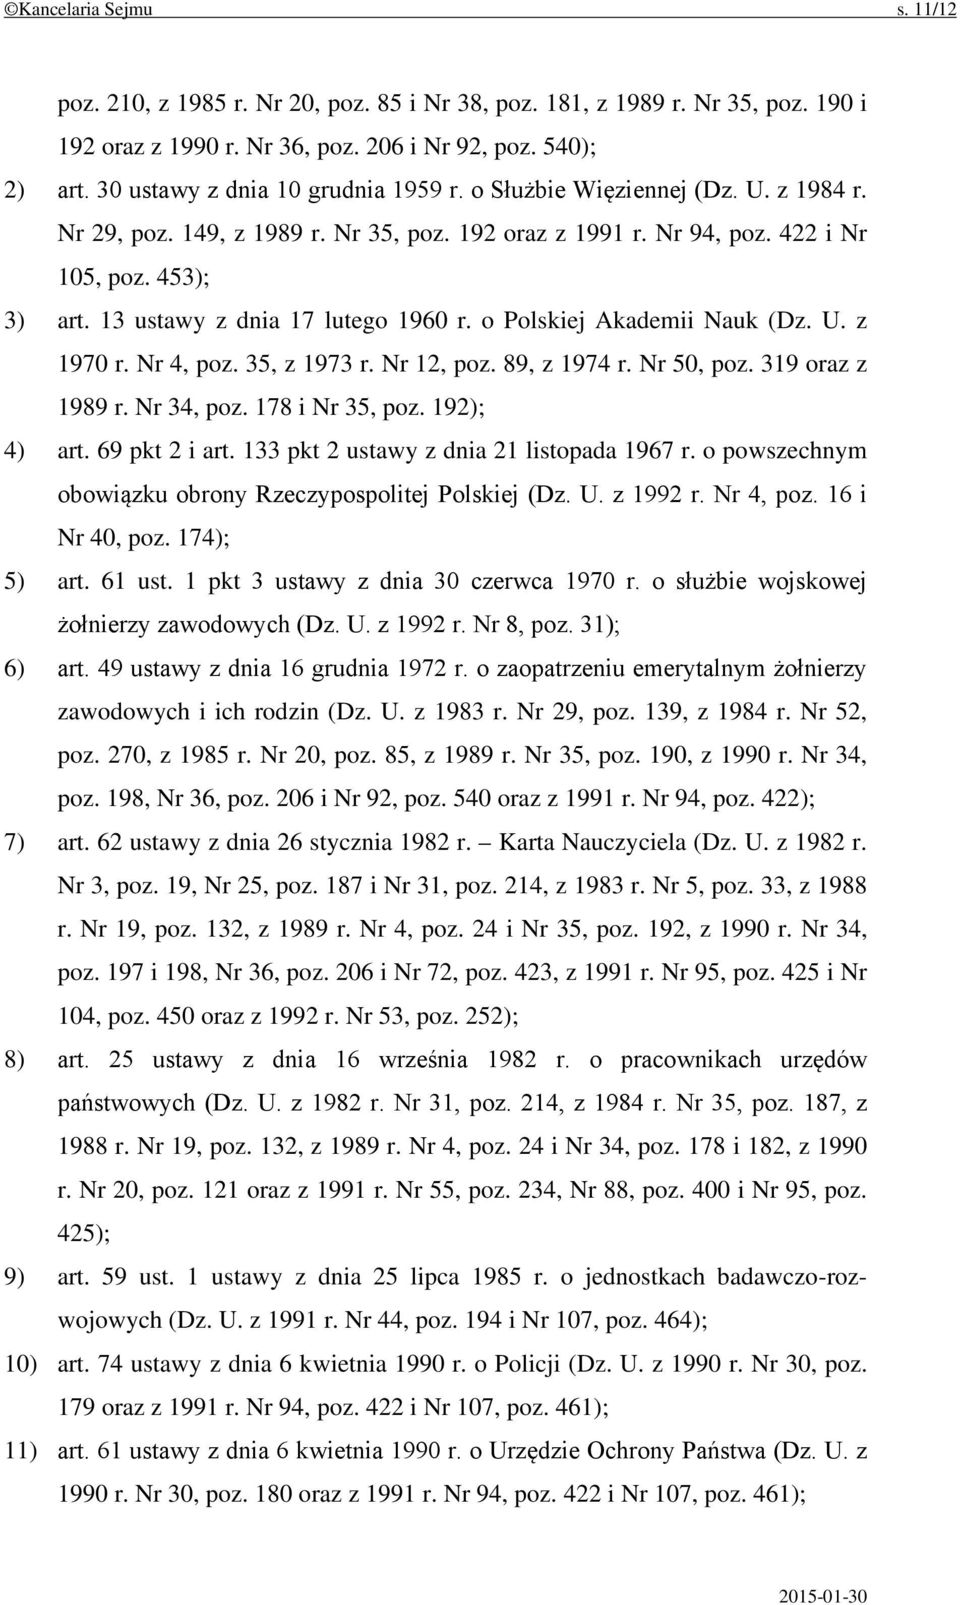 13 ustawy z dnia 17 lutego 1960 r. o Polskiej Akademii Nauk (Dz. U. z 1970 r. Nr 4, poz. 35, z 1973 r. Nr 12, poz. 89, z 1974 r. Nr 50, poz. 319 oraz z 1989 r. Nr 34, poz. 178 i Nr 35, poz.